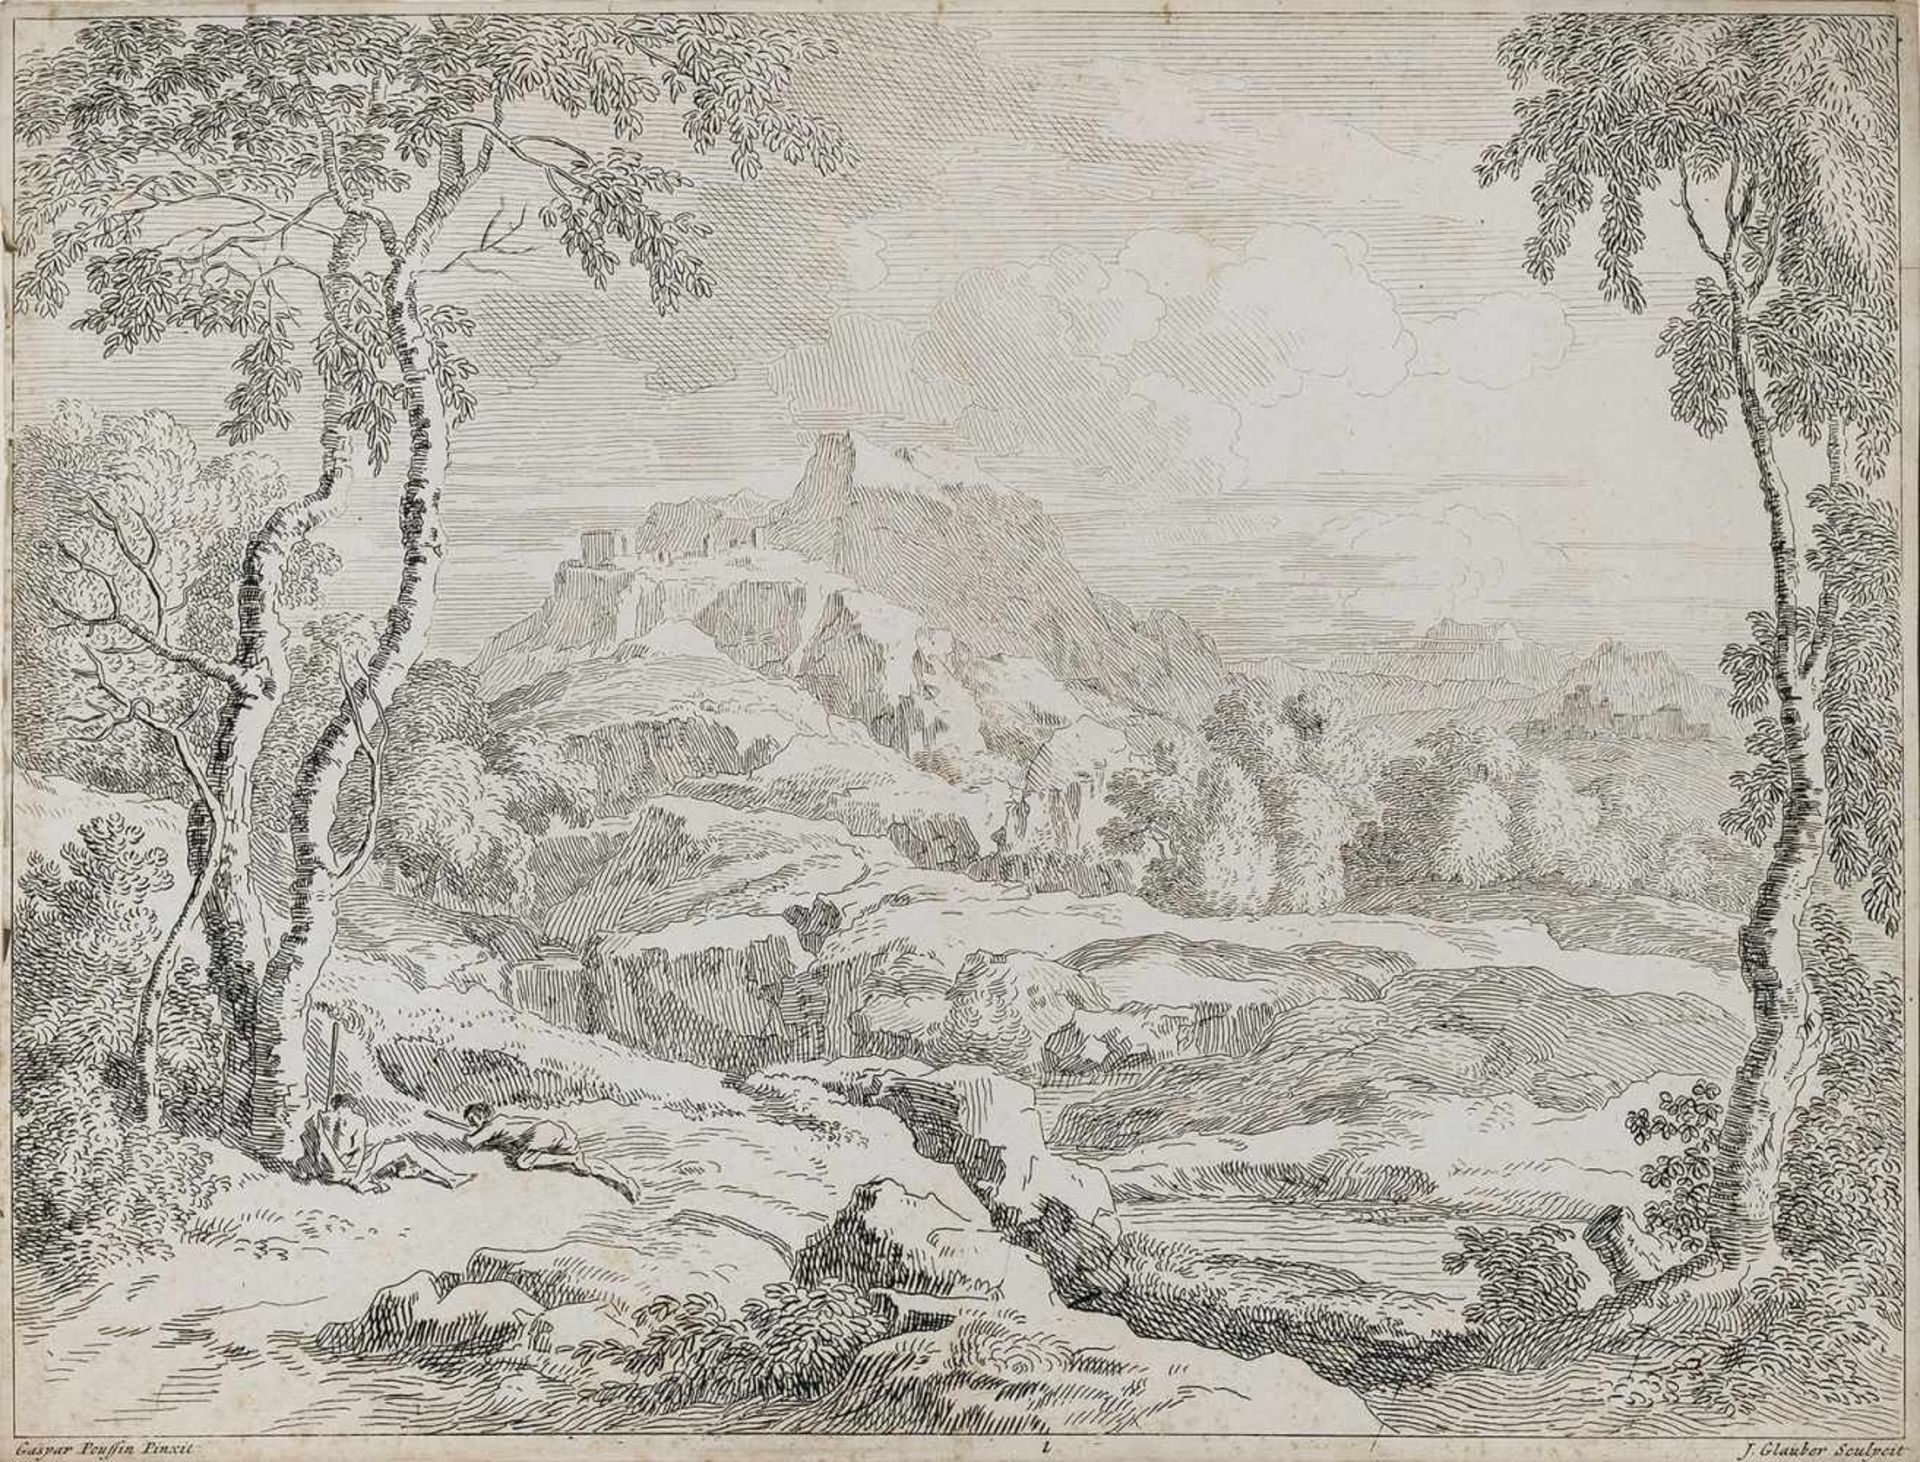 Glauber, Johannes"(1646-1726). Heroische Landschaft, ruhende Figuren links. Zeichnung, nach